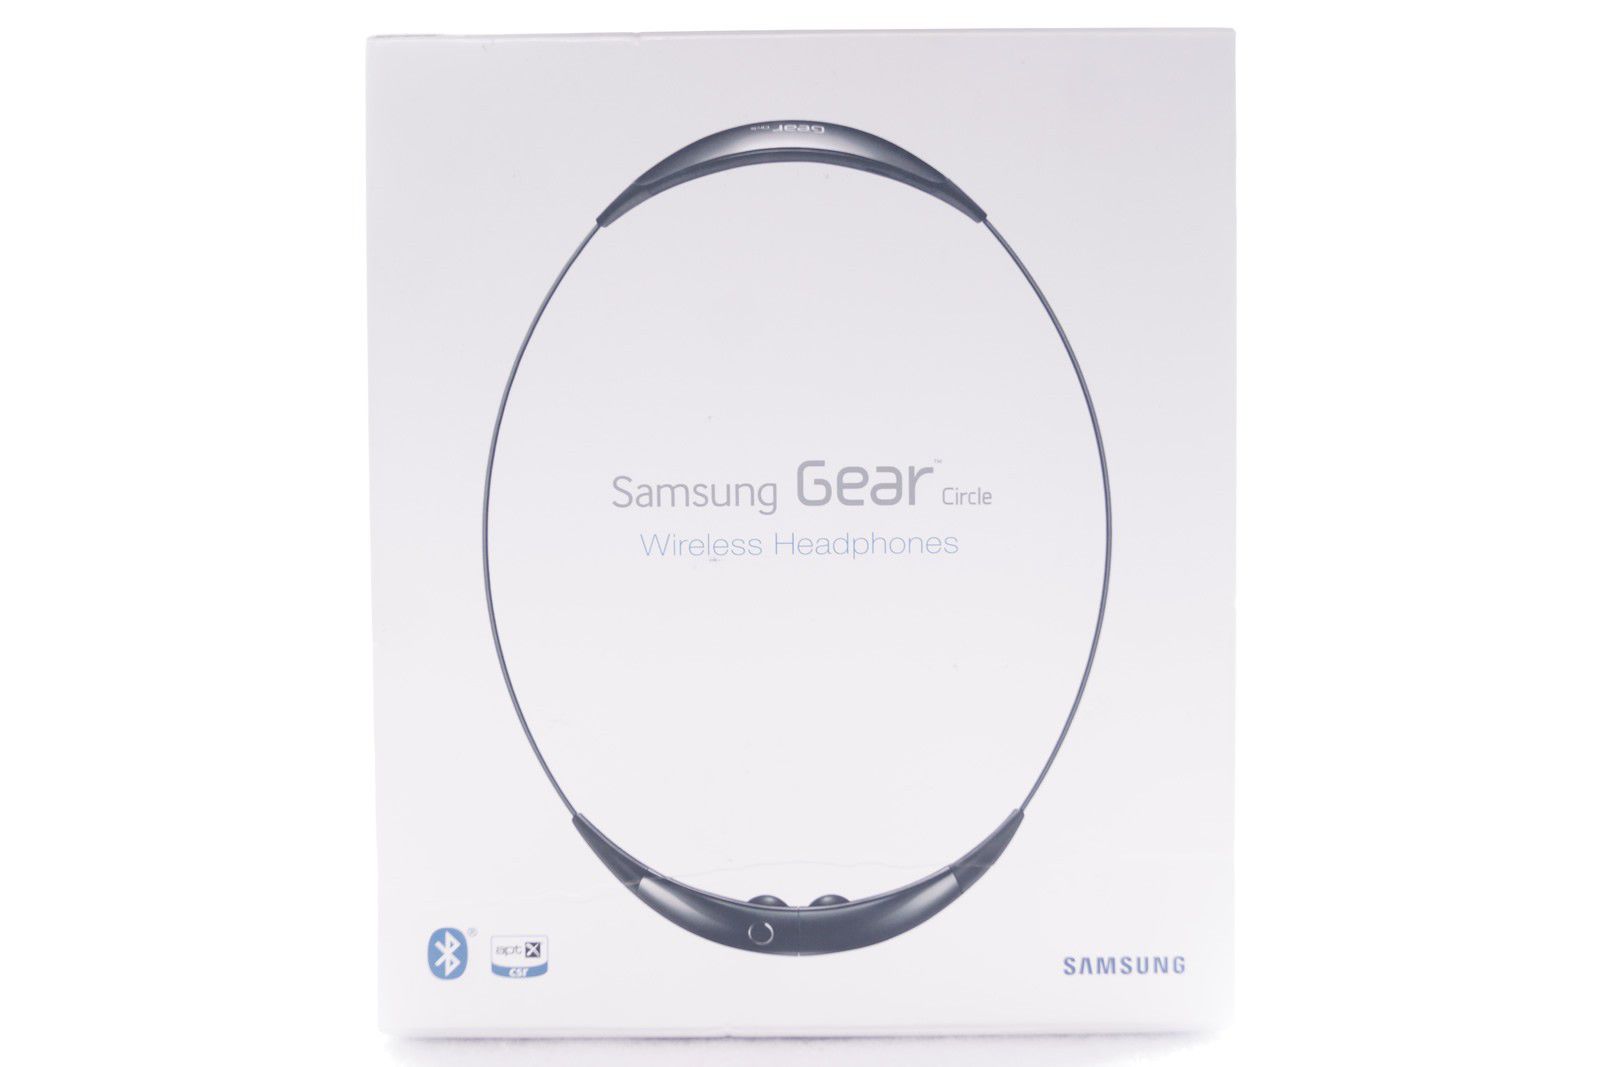 SAMSUNG - Gear Circle Wireless Headphones - SM-R130NZKSXAR (Black) Genuine